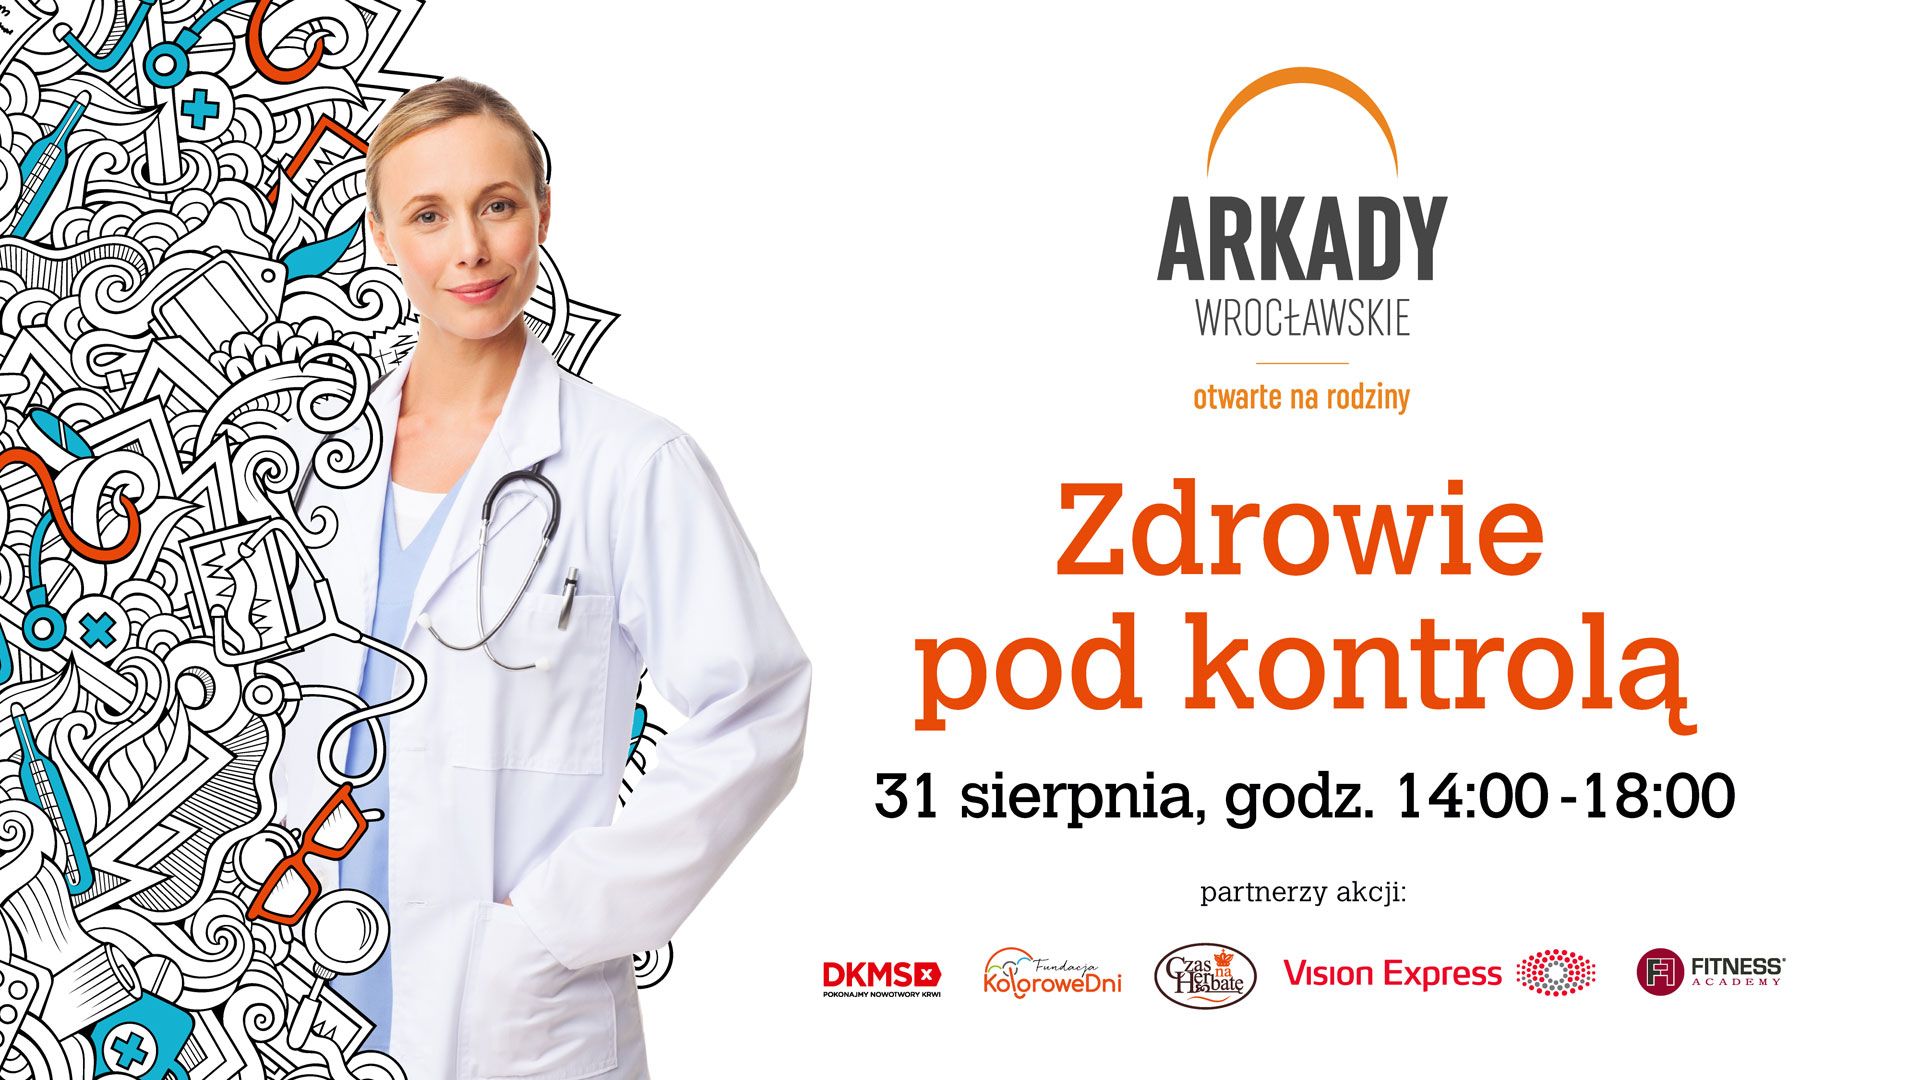 Zdrowie Pod Kontrolą – bezpłatne badania w Arkadach Wrocławskich